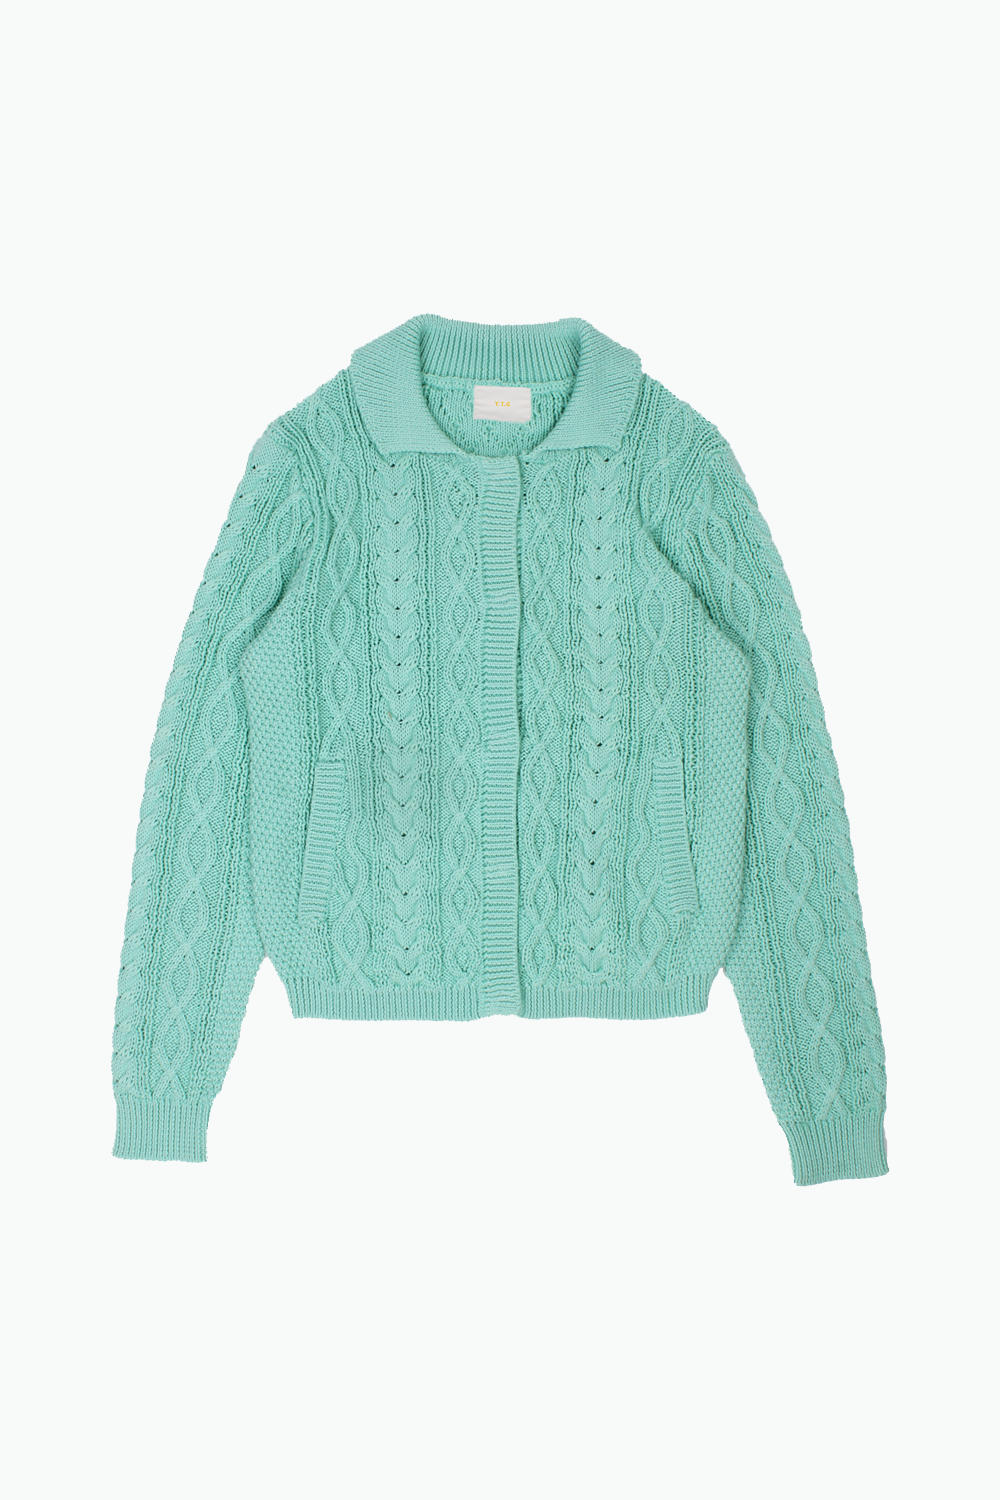 Aqua Mint Knit Cardigan (Clip Closure)